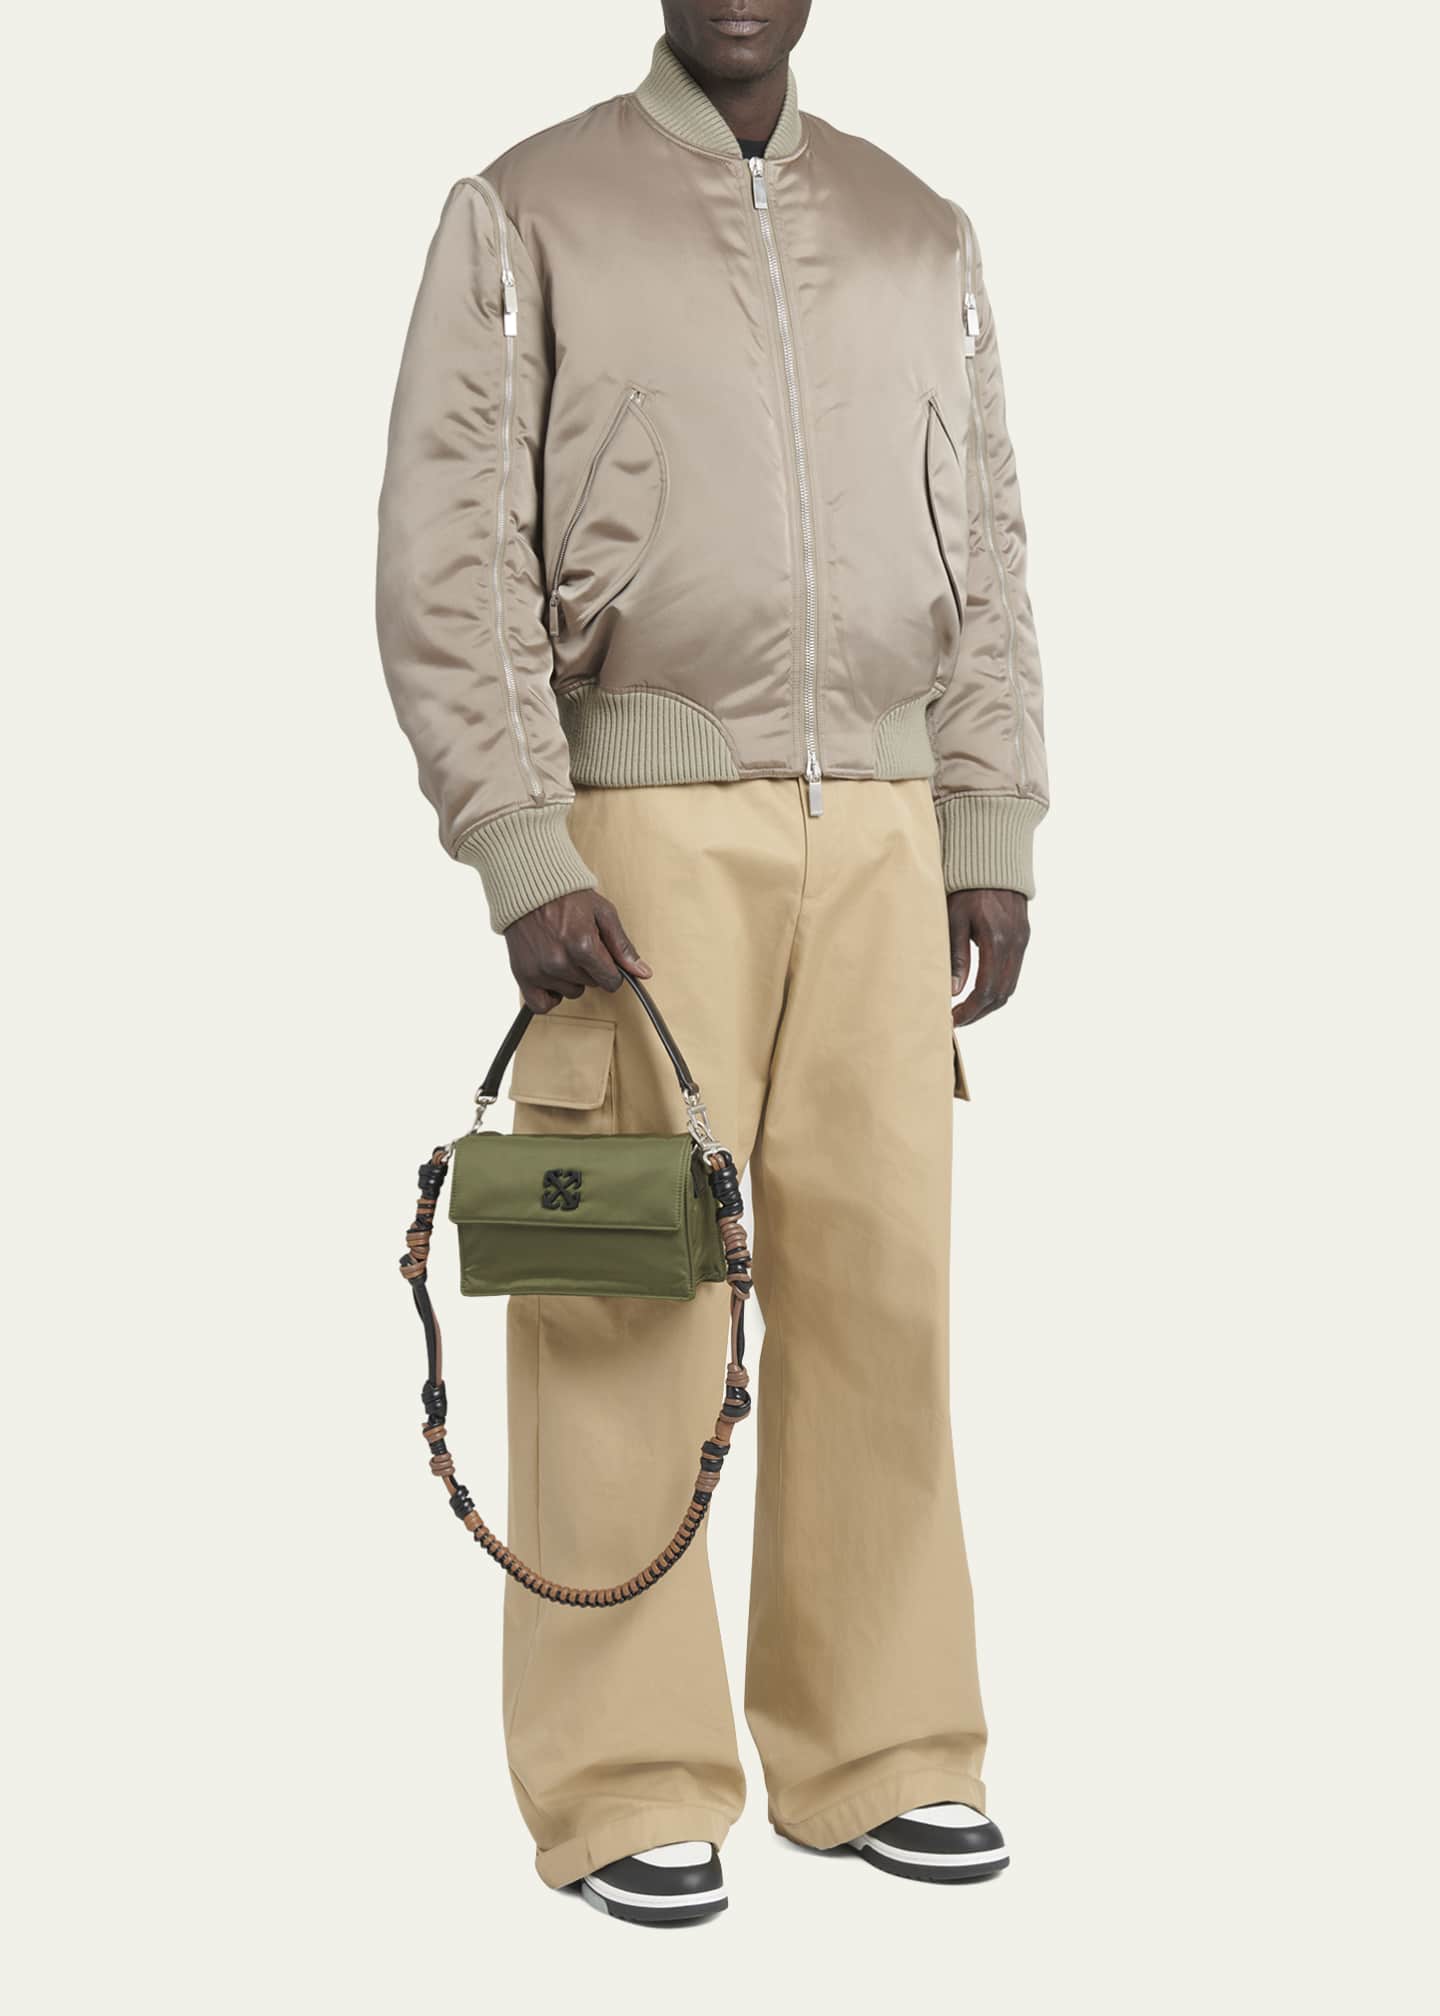 OFF-WHITE Men Soft Jitney 1.4 Bag – Atelier New York